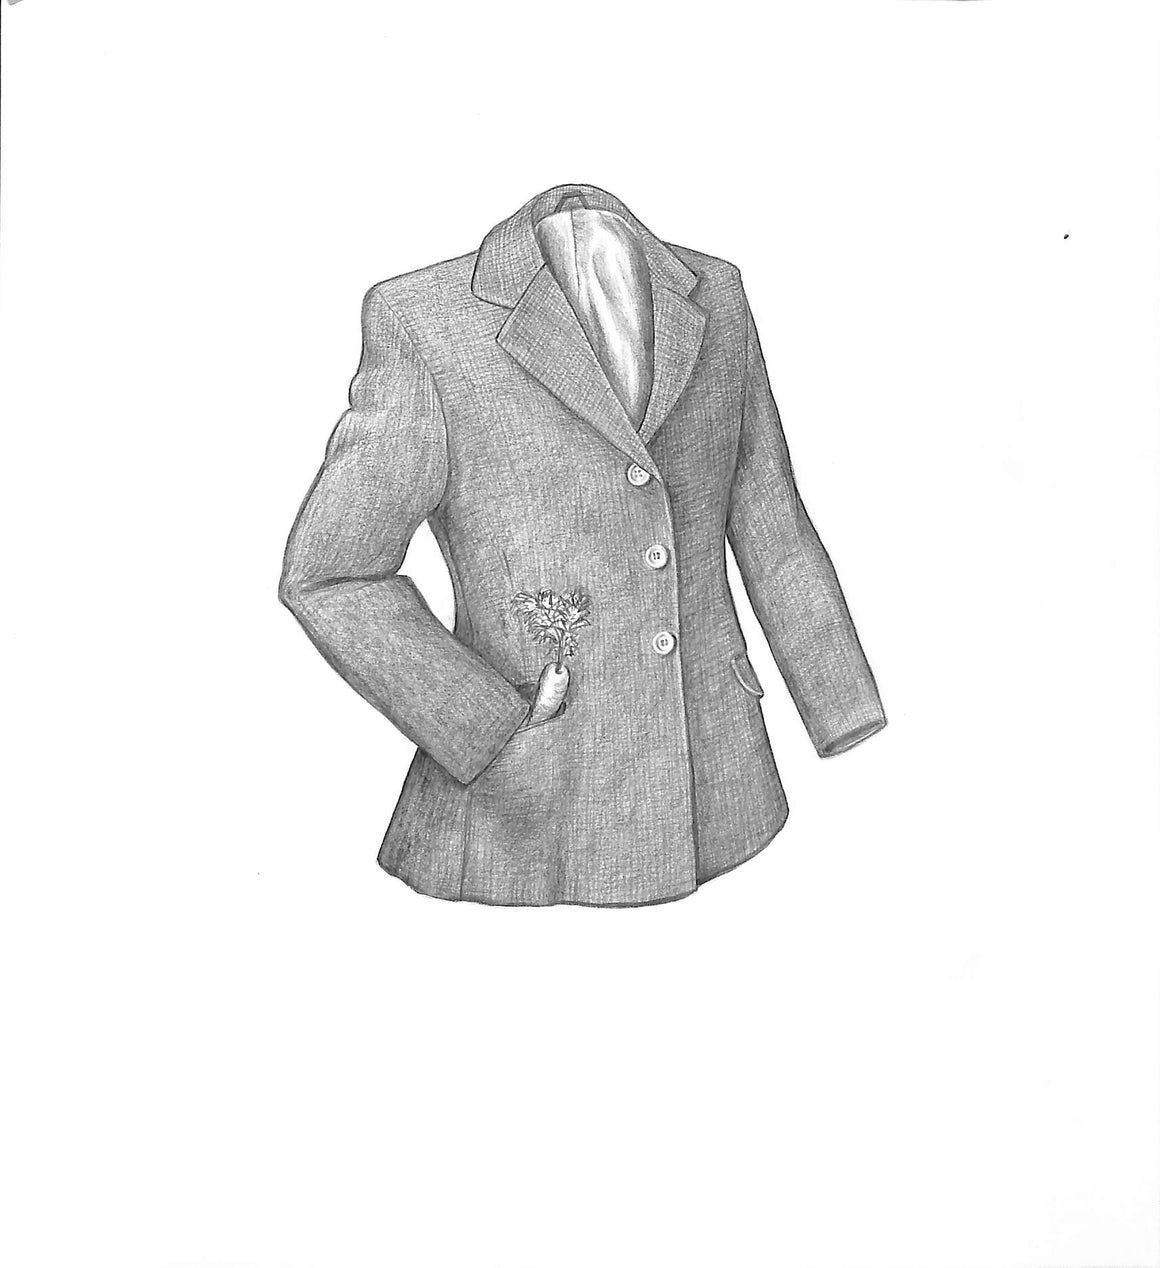 Children's Tweed Coat 2002 Graphite Drawing